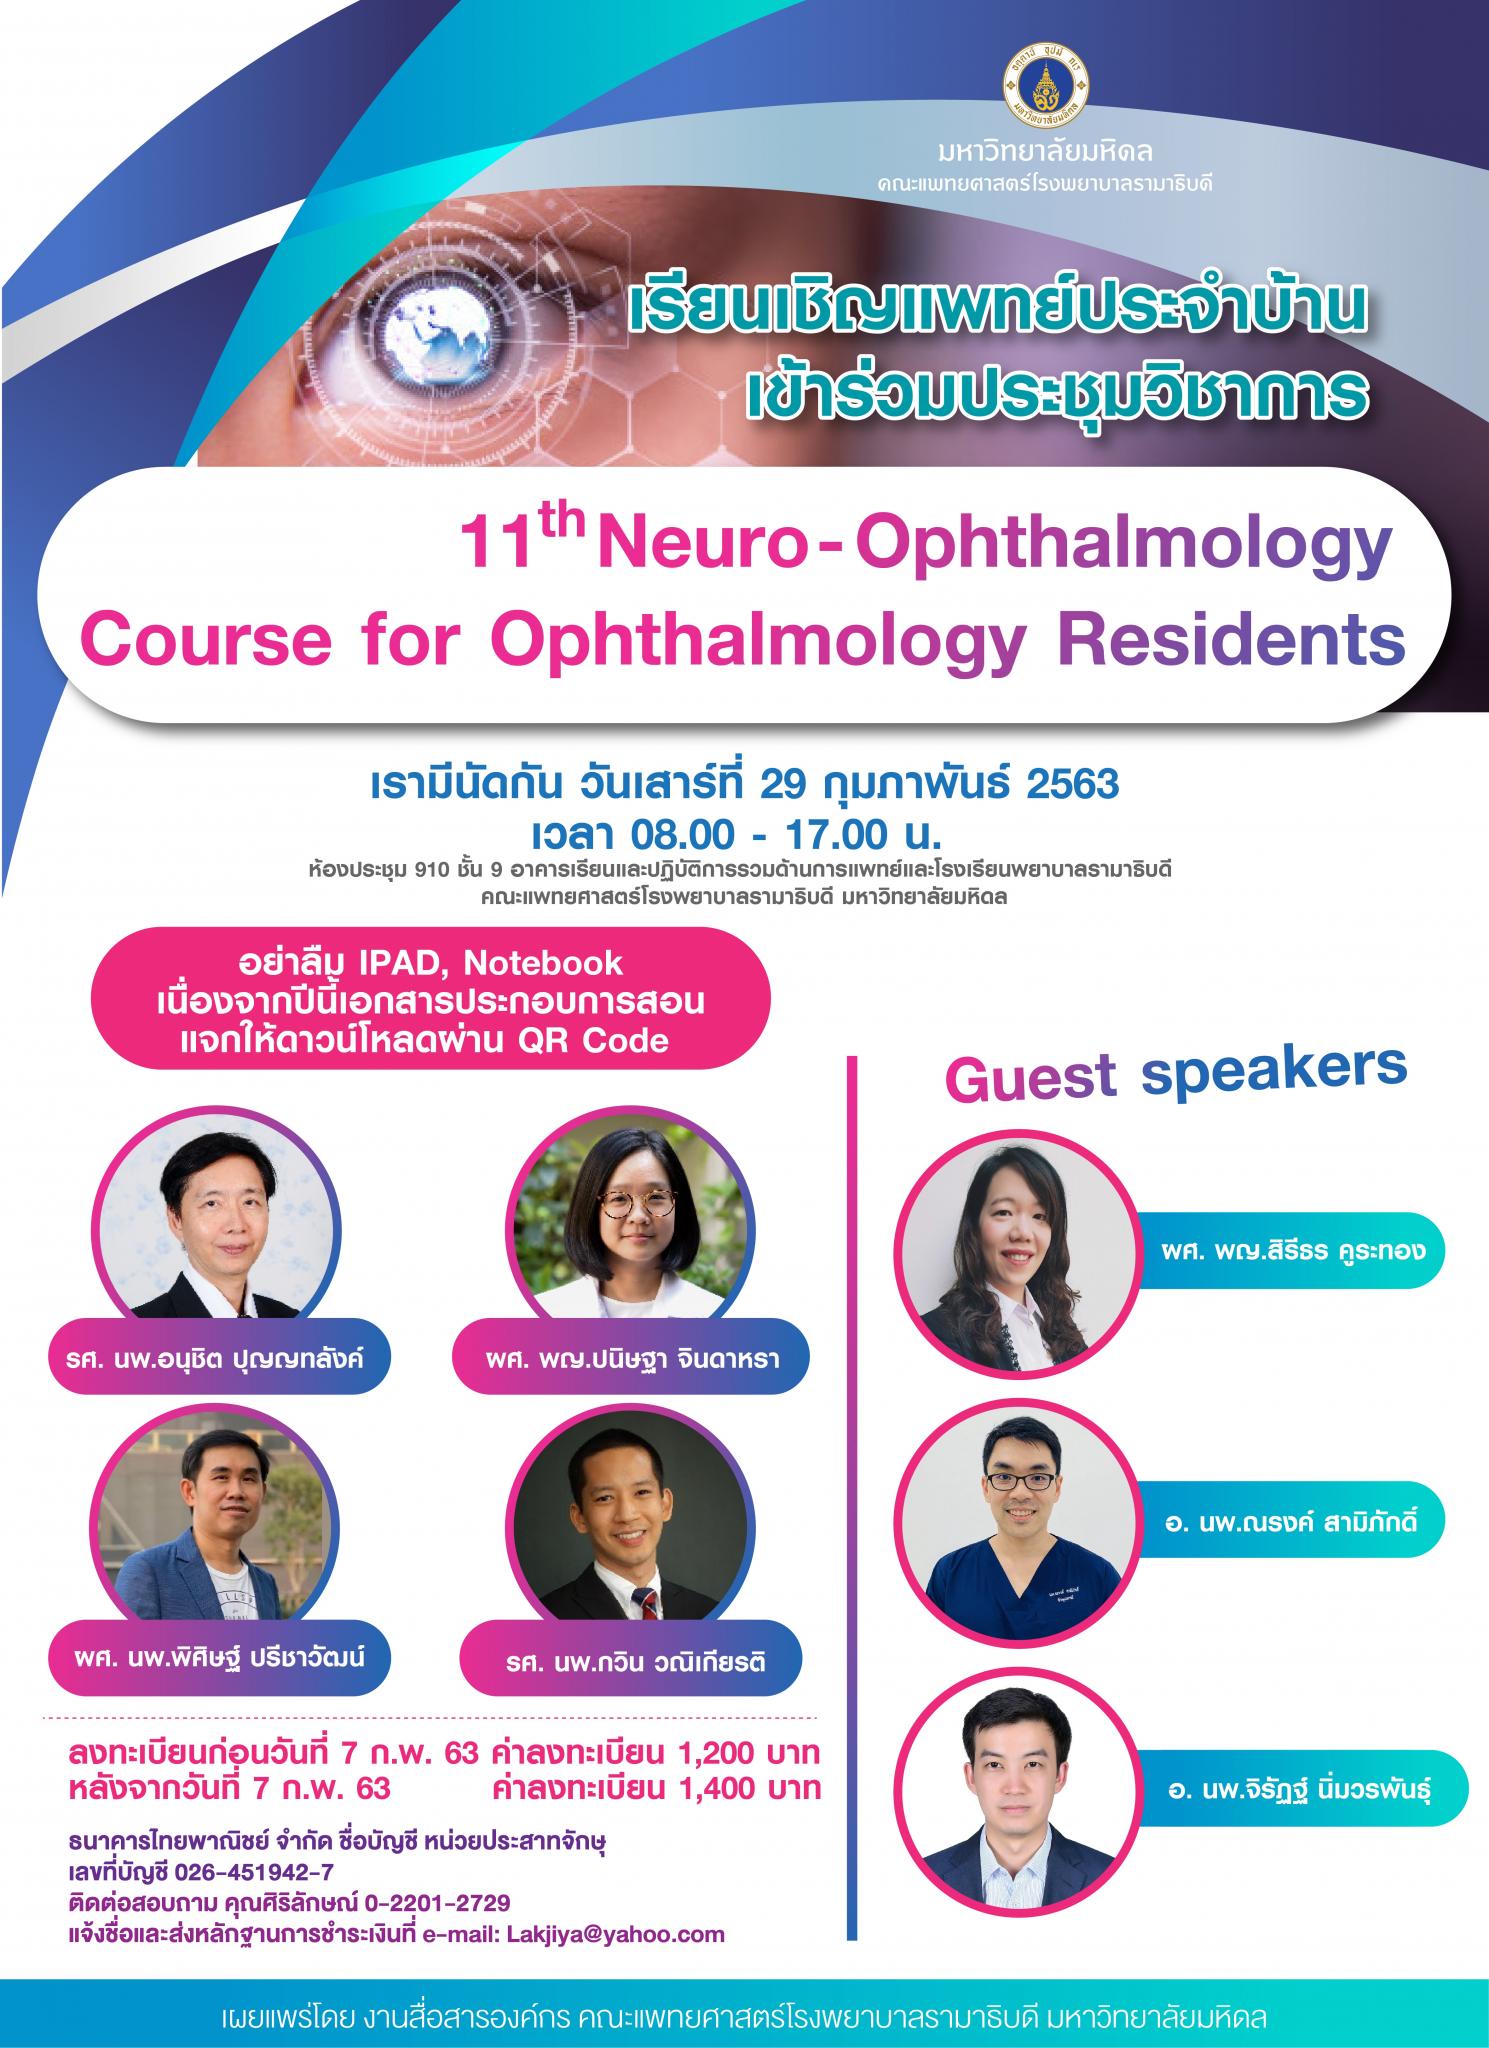 เรียนเชิญแพทย์ประจำบ้านเข้าร่วมประชุมวิชาการ 11th Neuro-Ophthalmology Course for Ophthalmology Residents